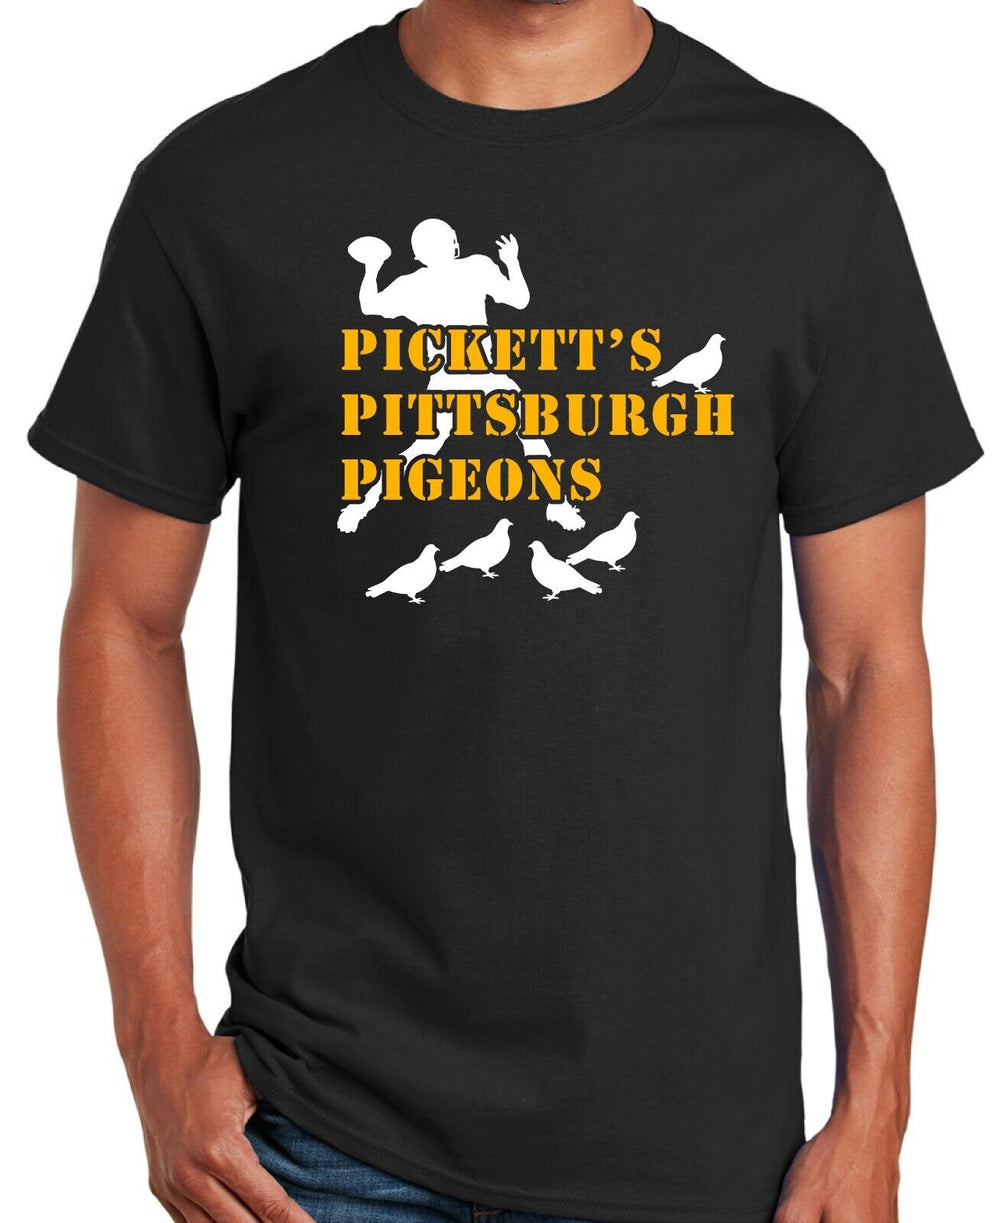 PICKETT'S PITTSBURGH PIGEONS SHIRT BLACK SHIRT SM-5XL